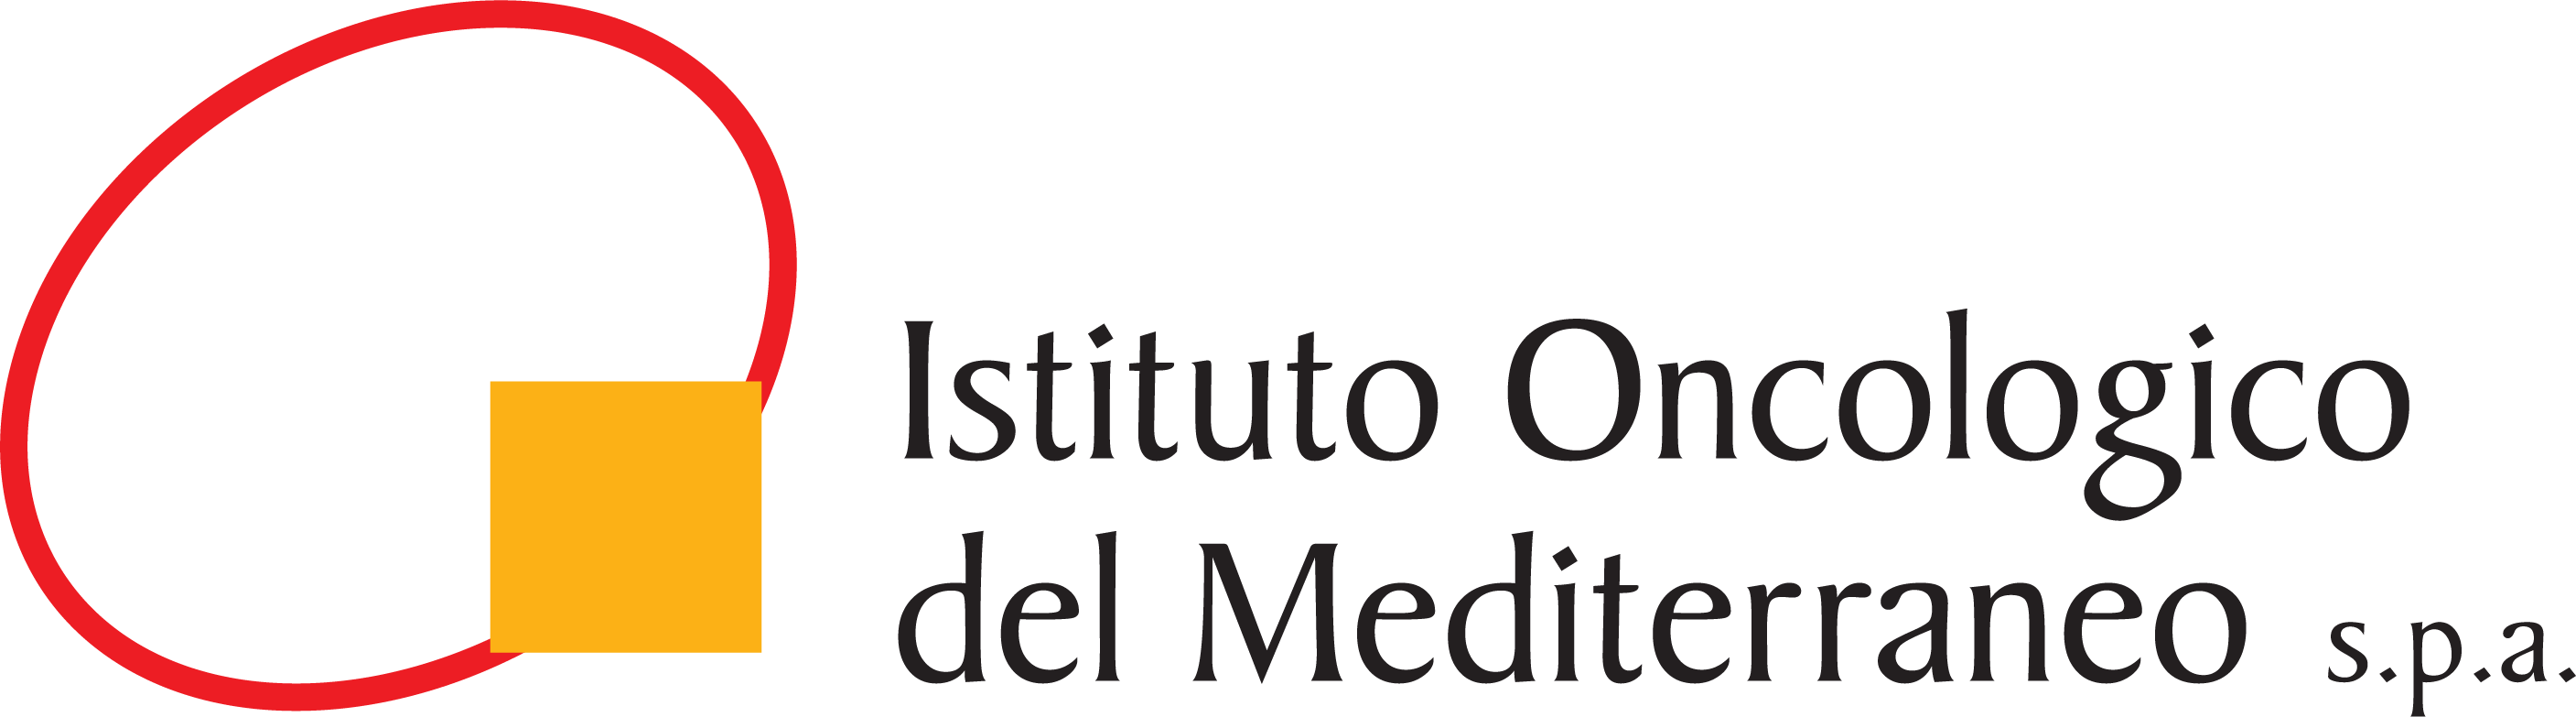 Istituto Oncologico del Mediterraneo